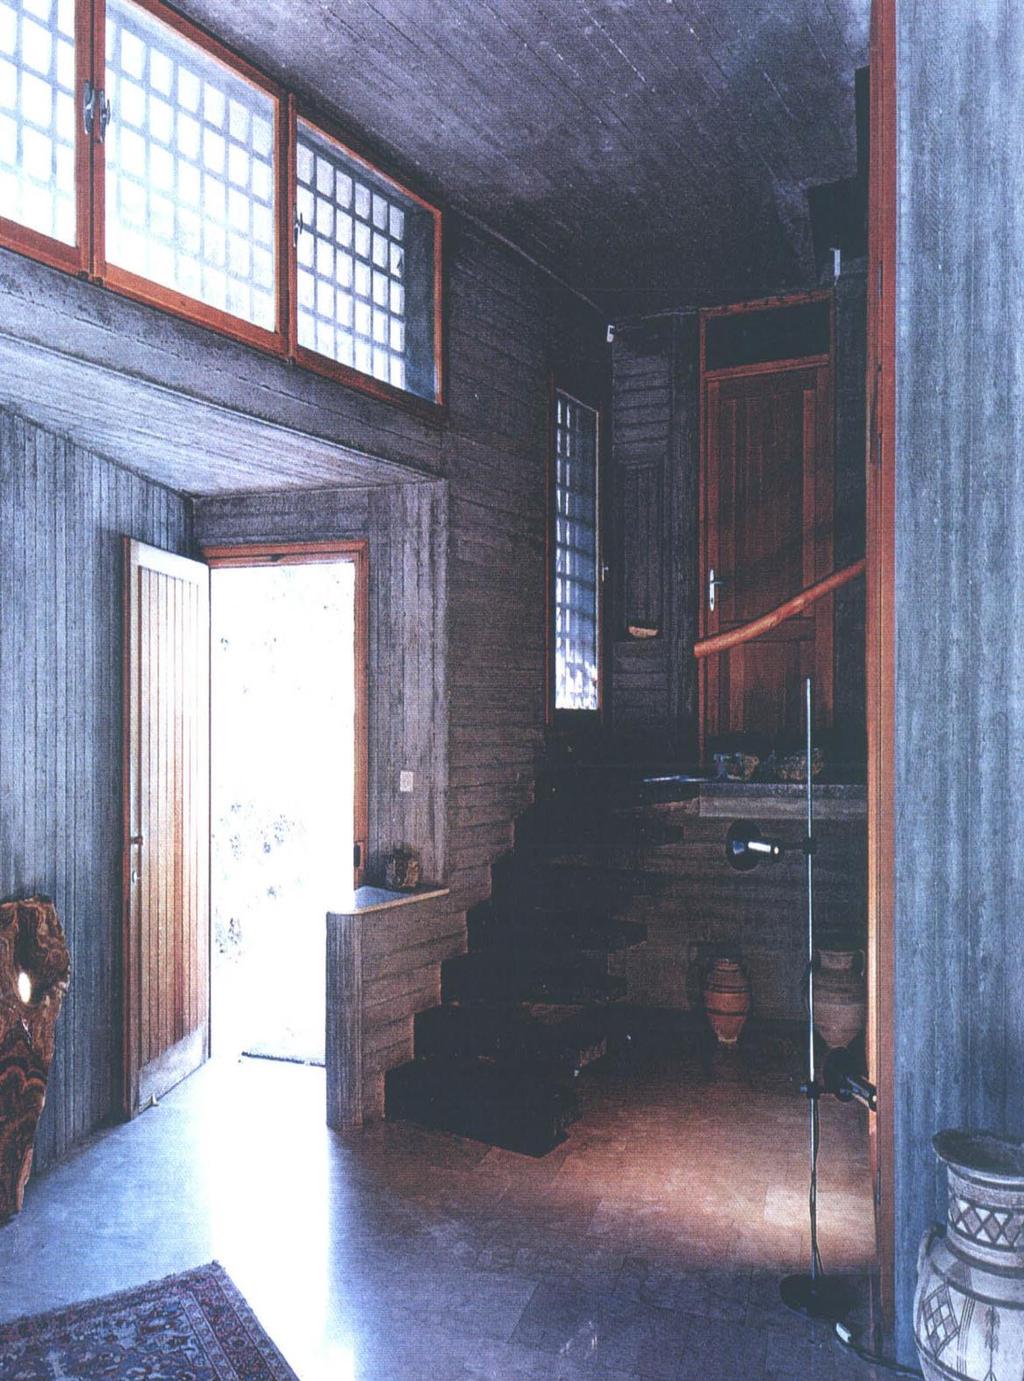 κατοικία Νεοπτόλεμου Μιχαηλίδη, 1964 «ένα συνειδητό, ακριβές και εξαίσιο